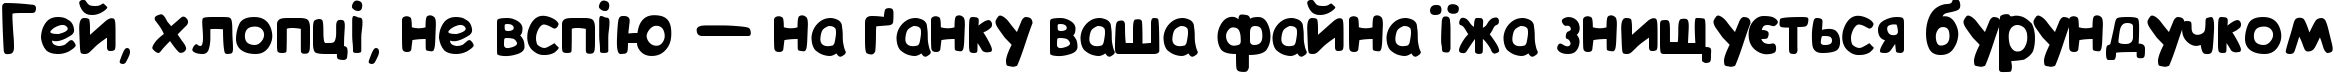 Пример написания шрифтом BIP текста на украинском